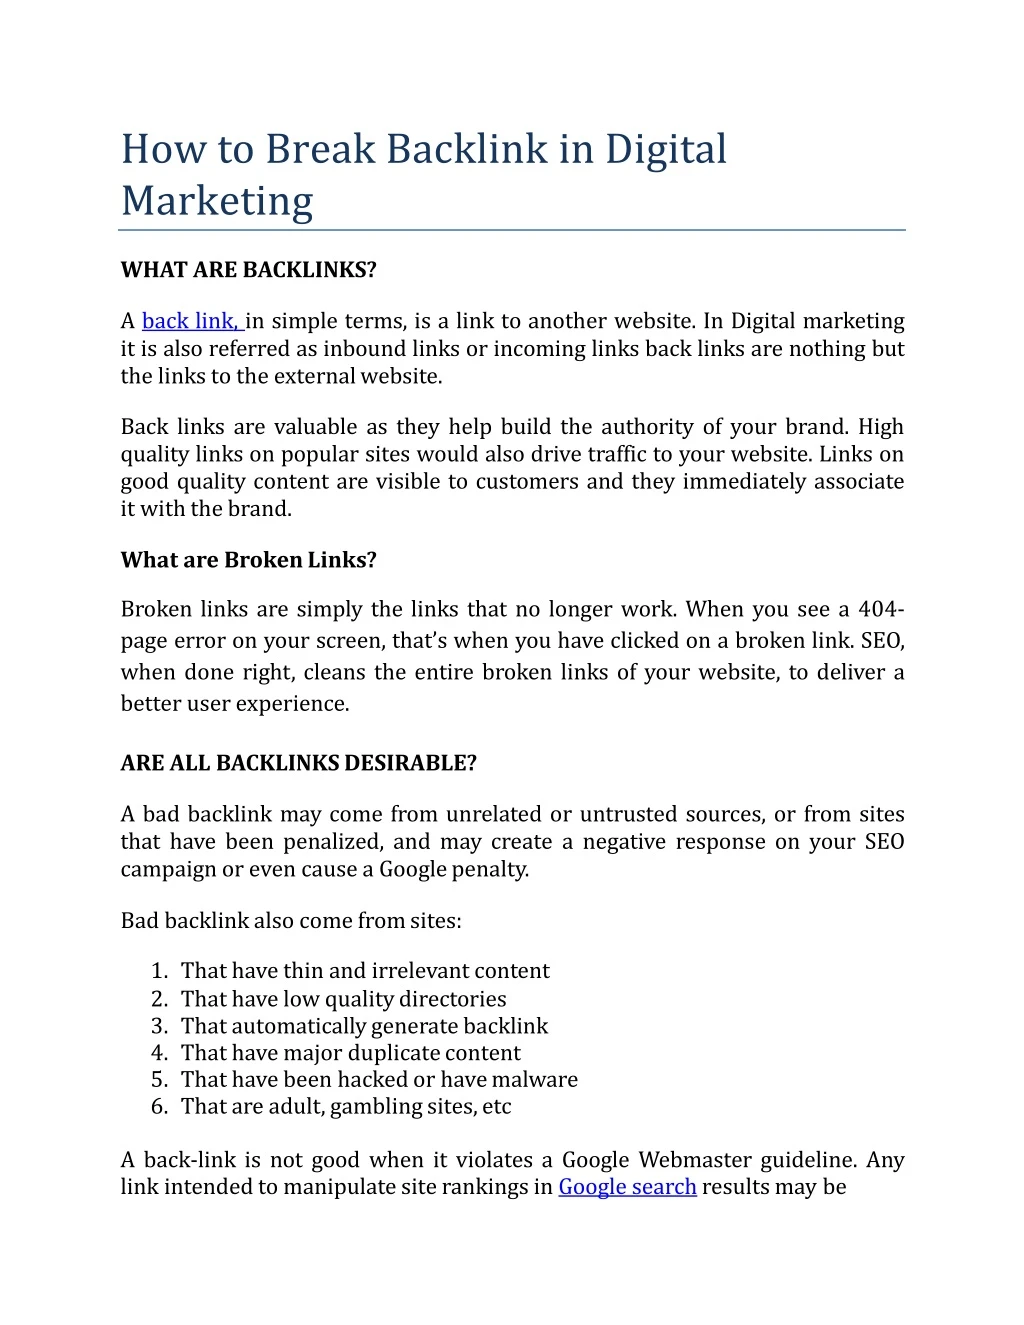 how to break backlink in digital marketing